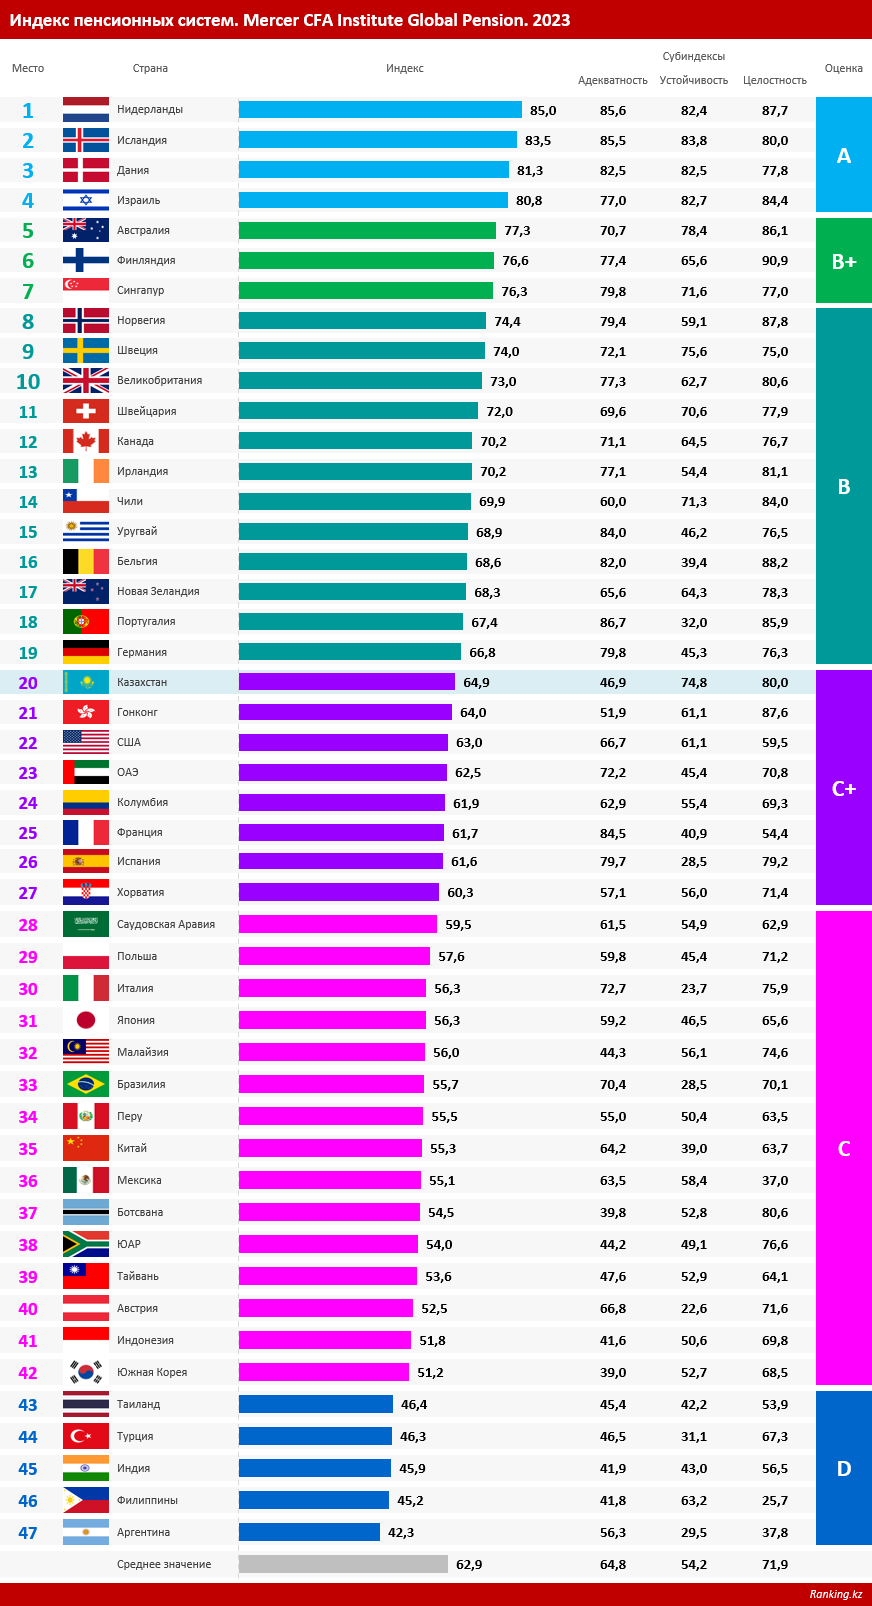 В рейтинге пенсионных систем Казахстан расположился на 20-м месте, опередив множество развитых стран. Обзор ситуации